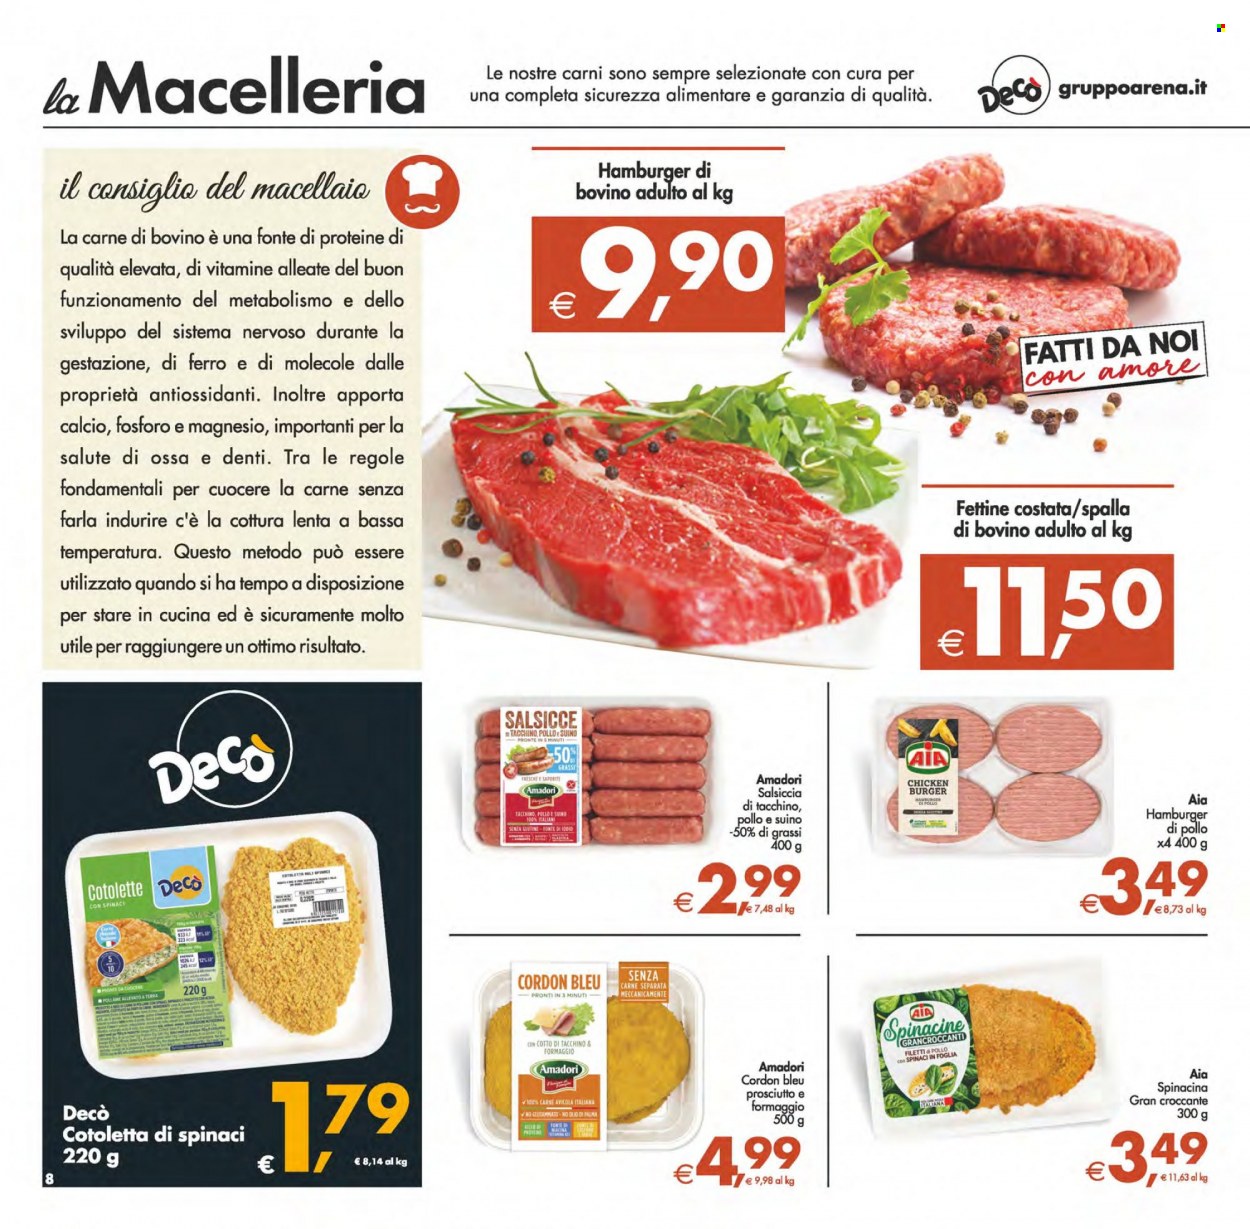 thumbnail - Volantino Deco - 1/6/2023 - 12/6/2023 - Prodotti in offerta - cotolette, AIA, Amadori, salsiccia, hamburger, hamburger di pollo, Cordon Bleu, Spinacine, olio, Magnesio. Pagina 8.